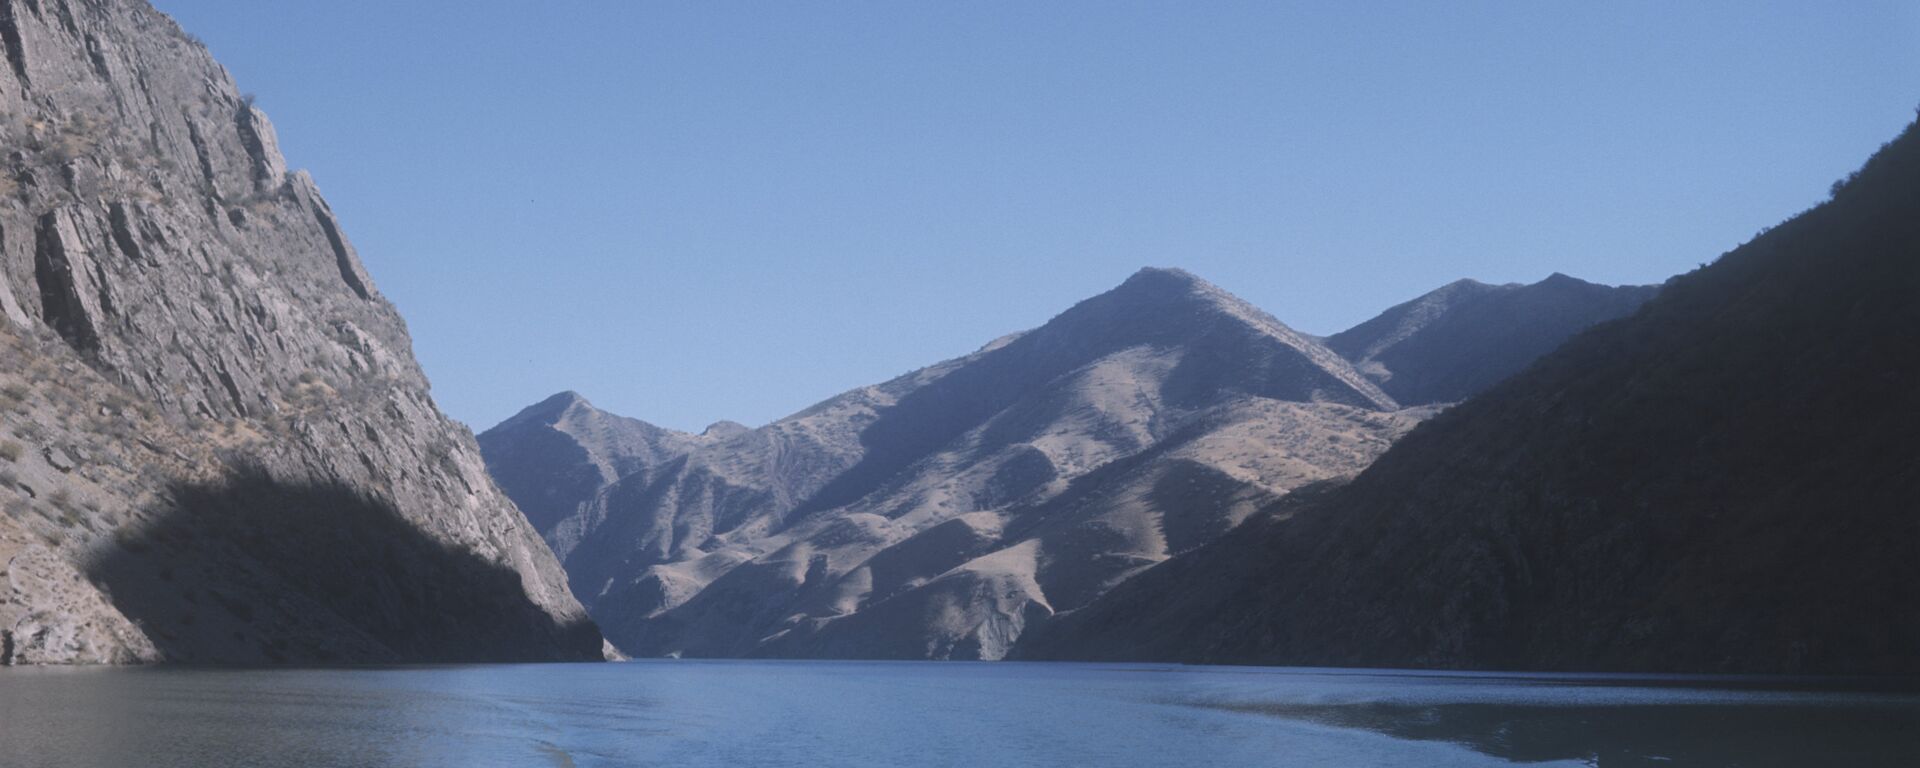 Водохранилище Вахш на реке Нурх - Sputnik Таджикистан, 1920, 16.11.2021